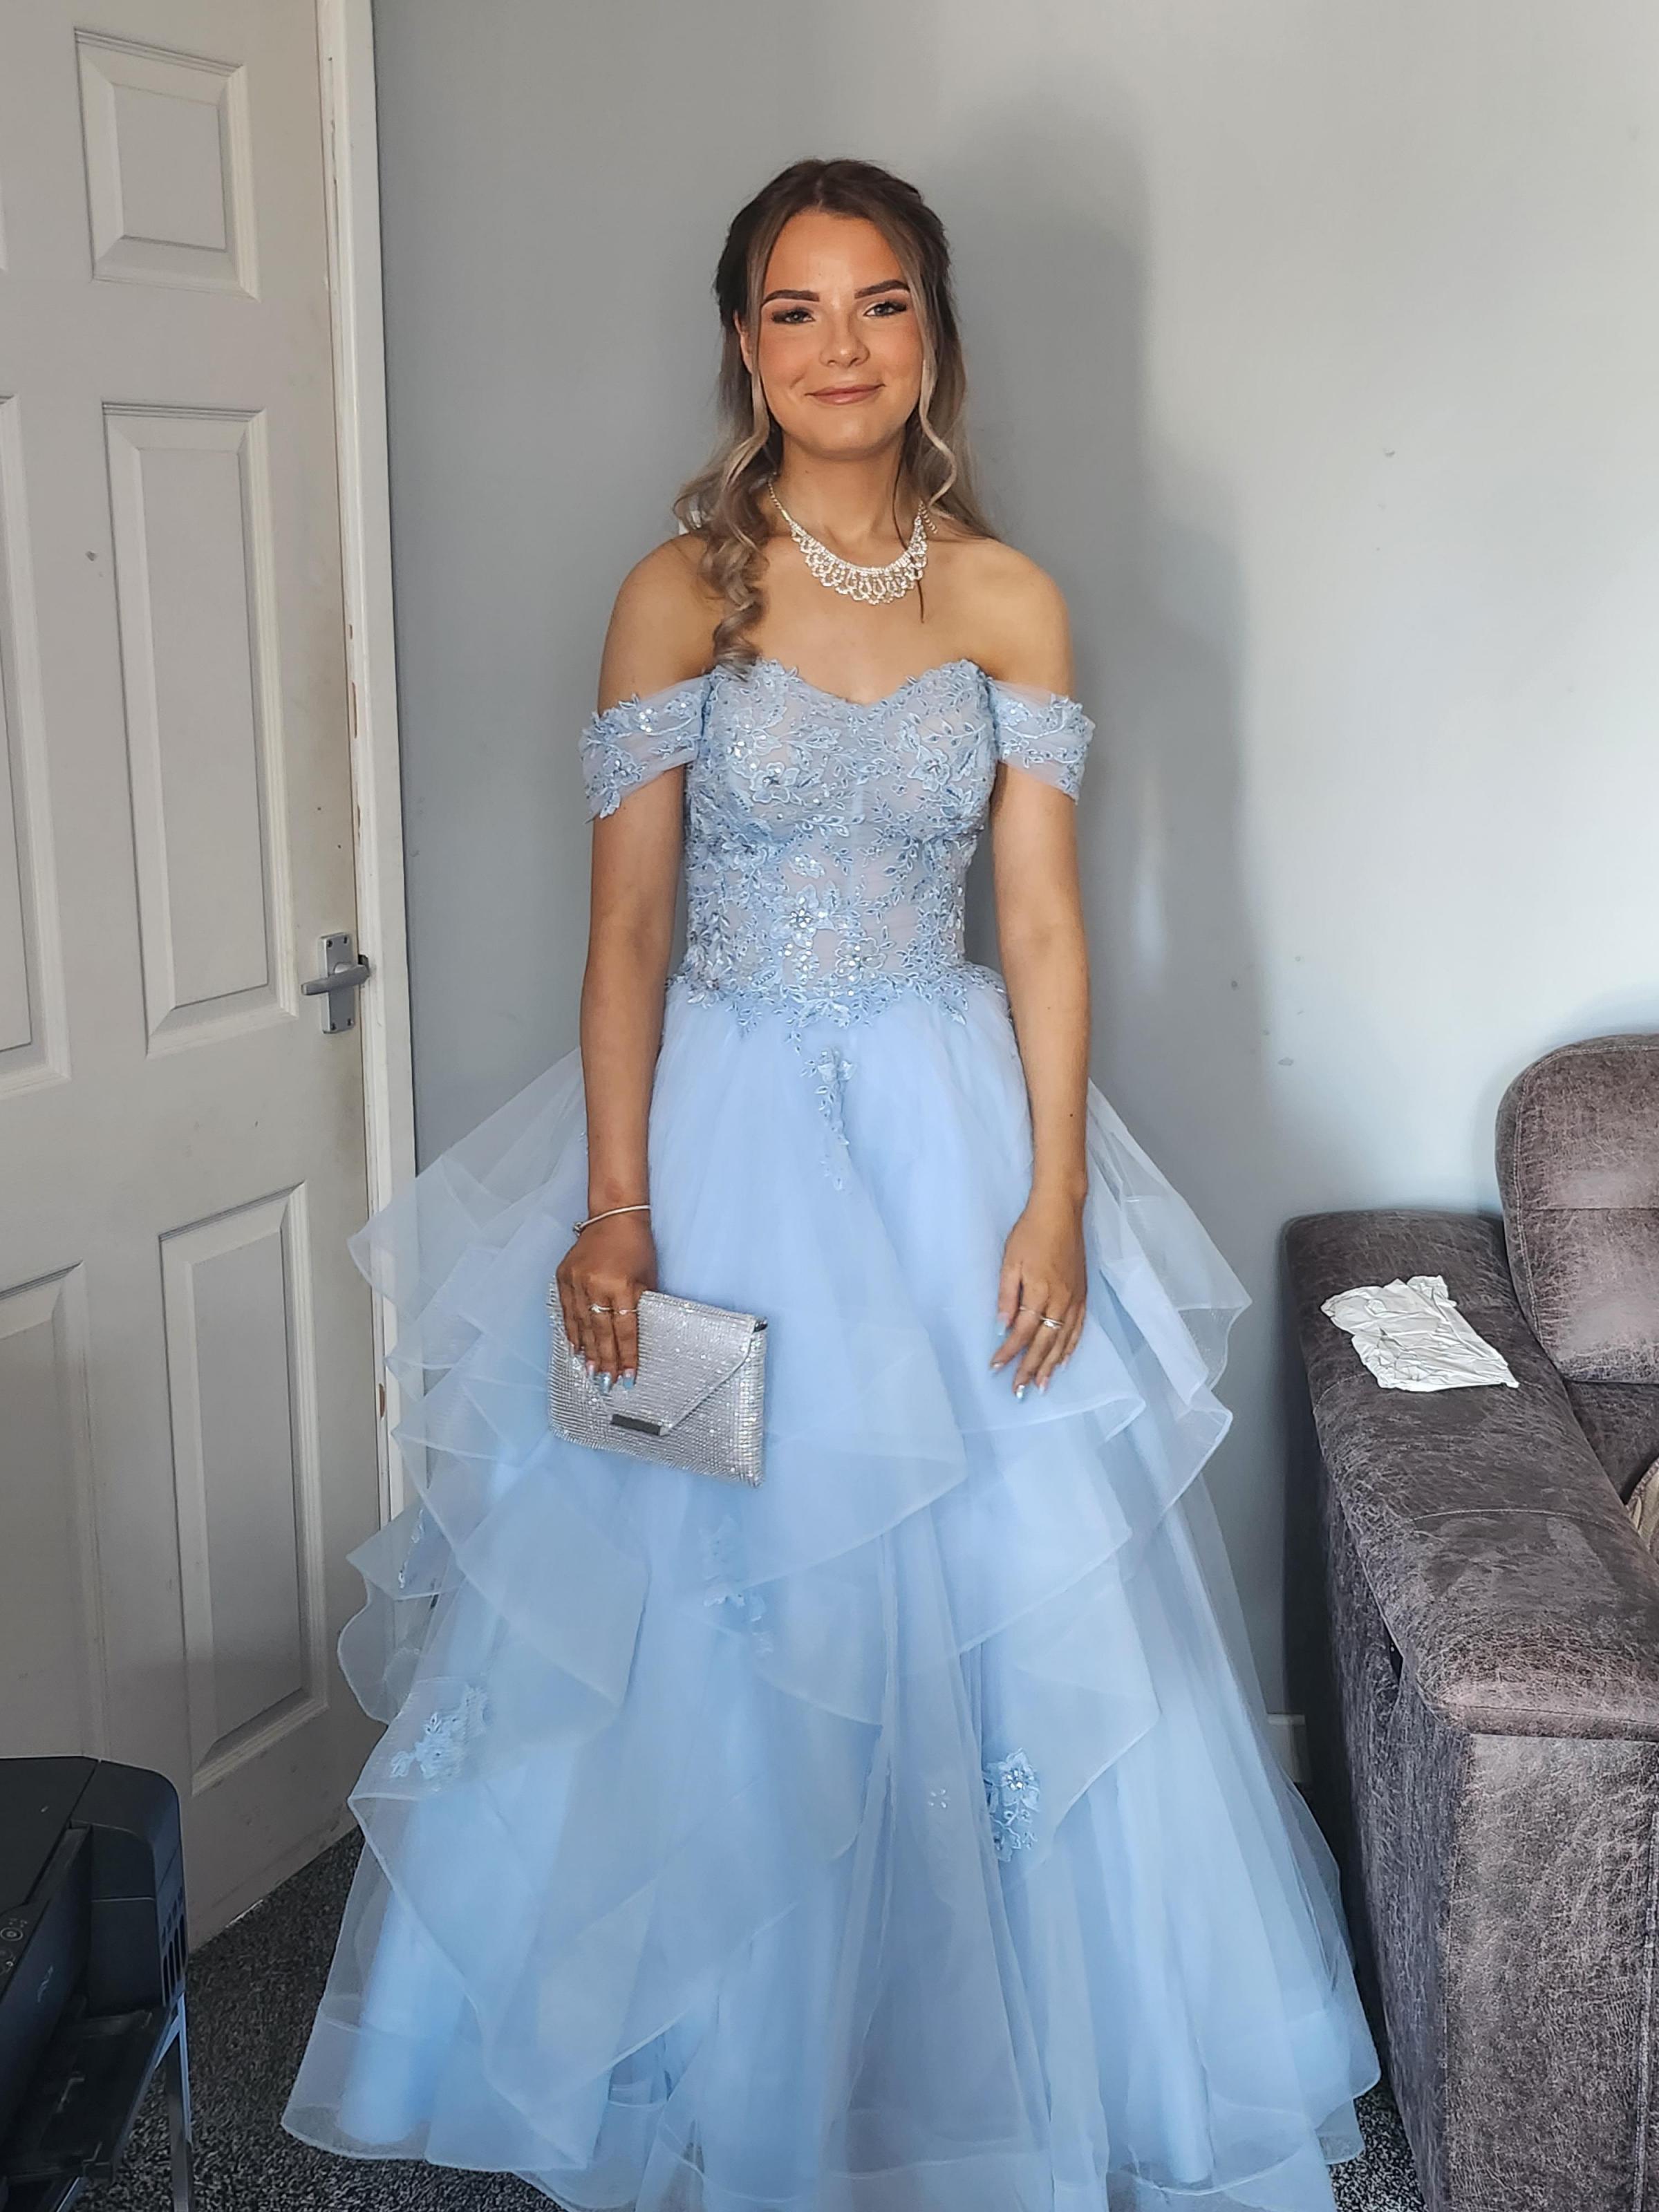 Cinderella (Amber Jones) ready for her ball, the Ysgol Rhiwabon prom.